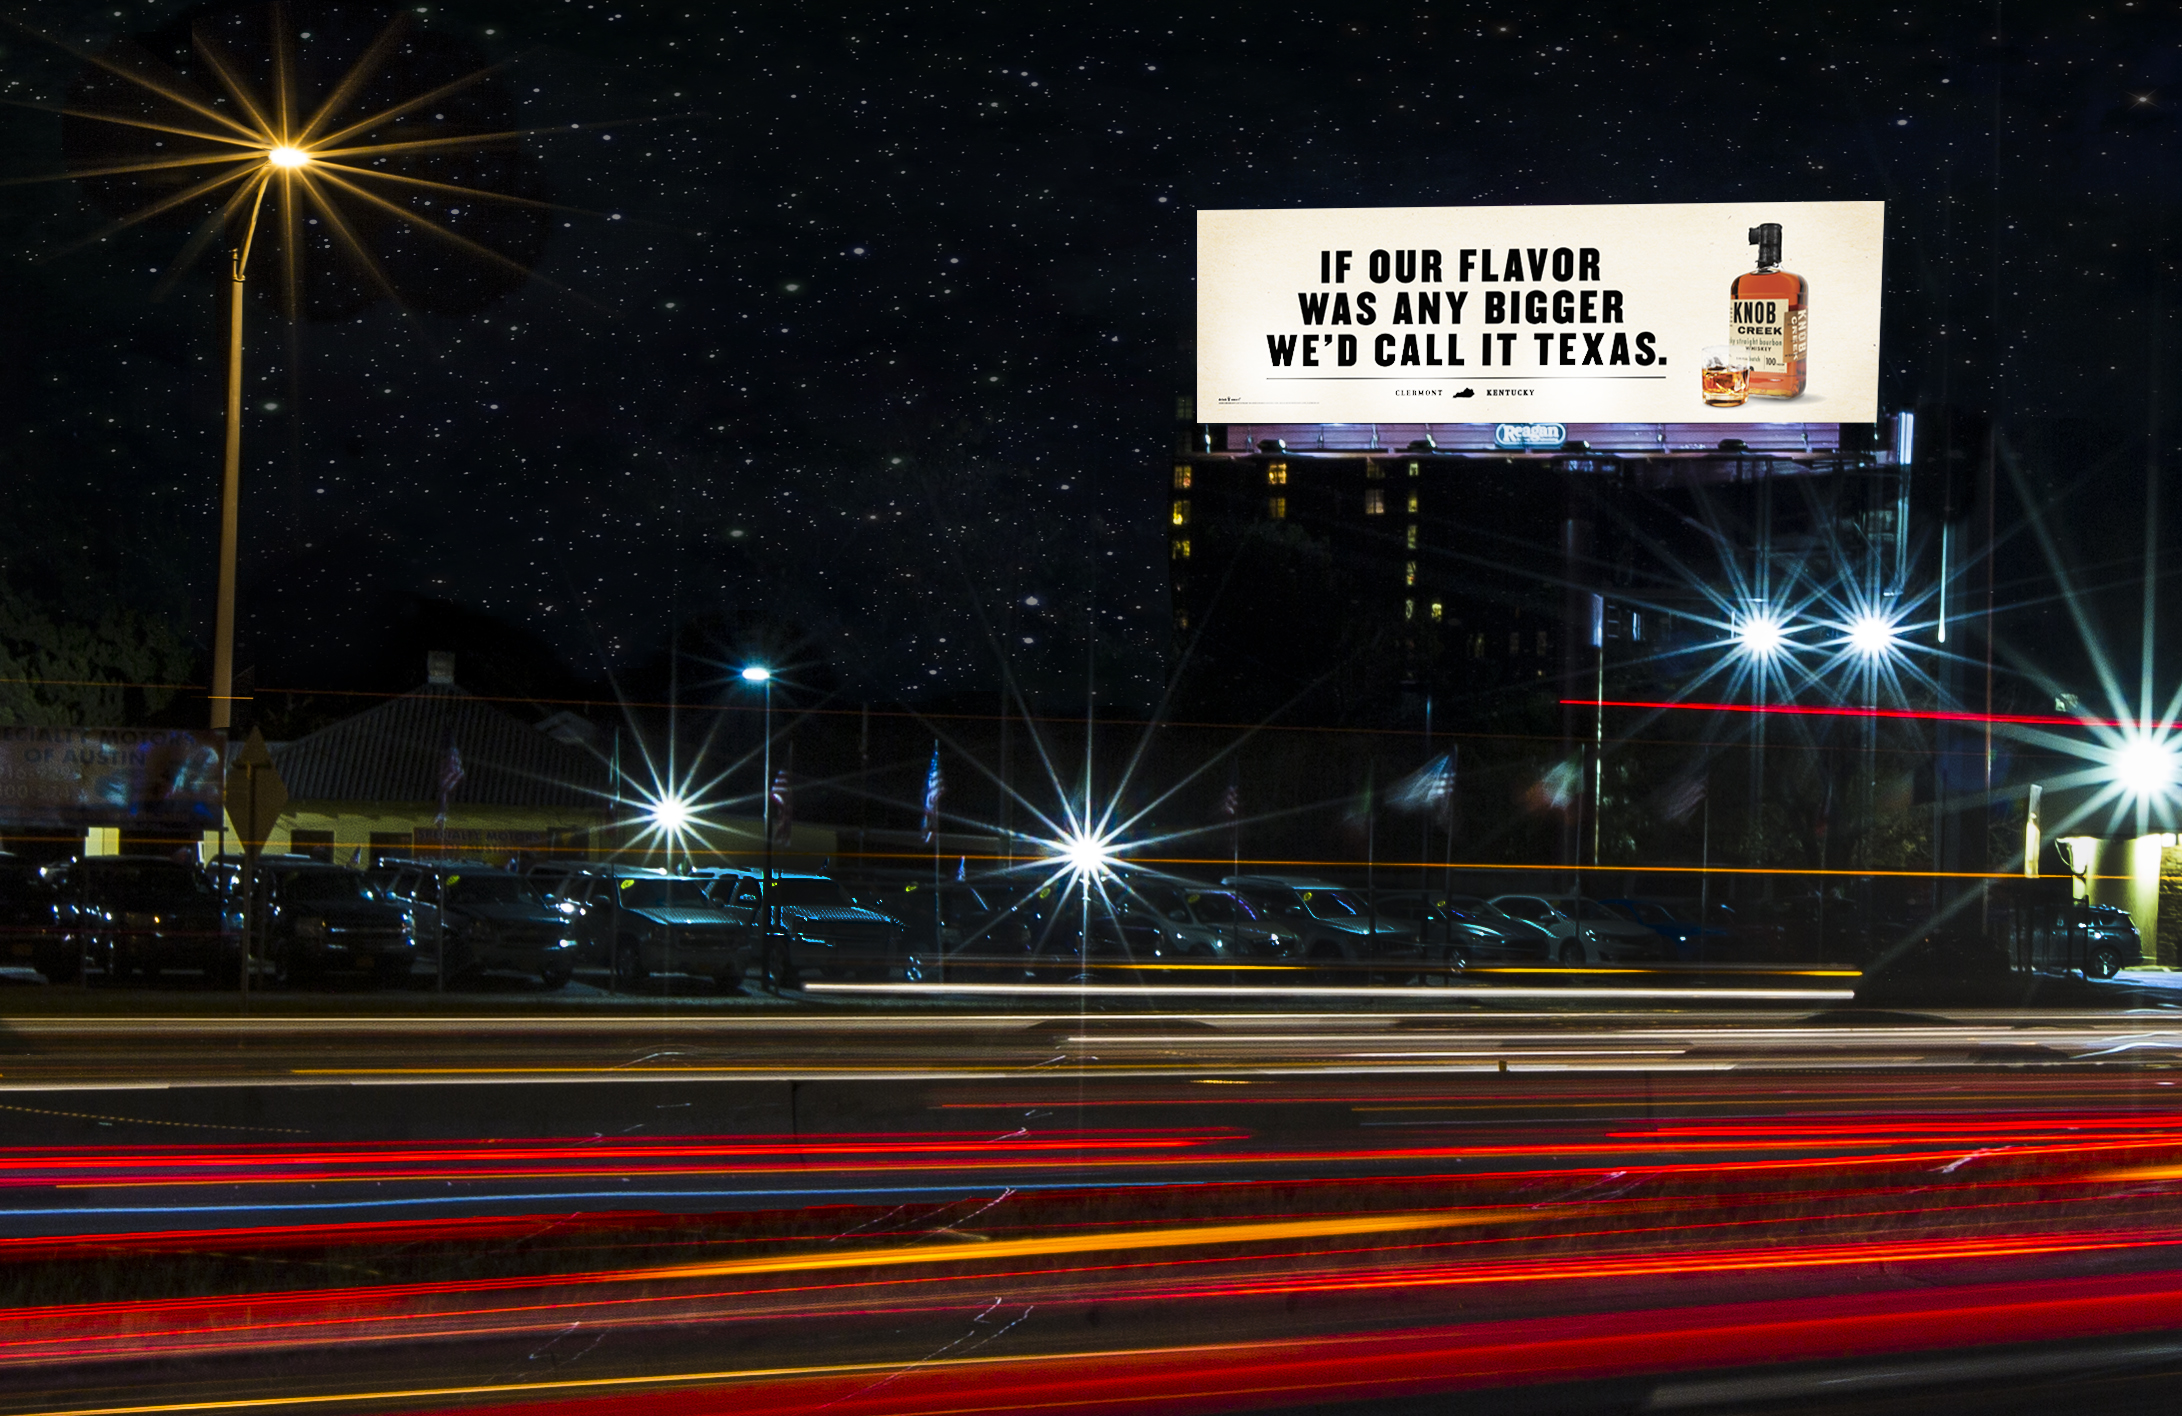 knob billboard with stars.jpg